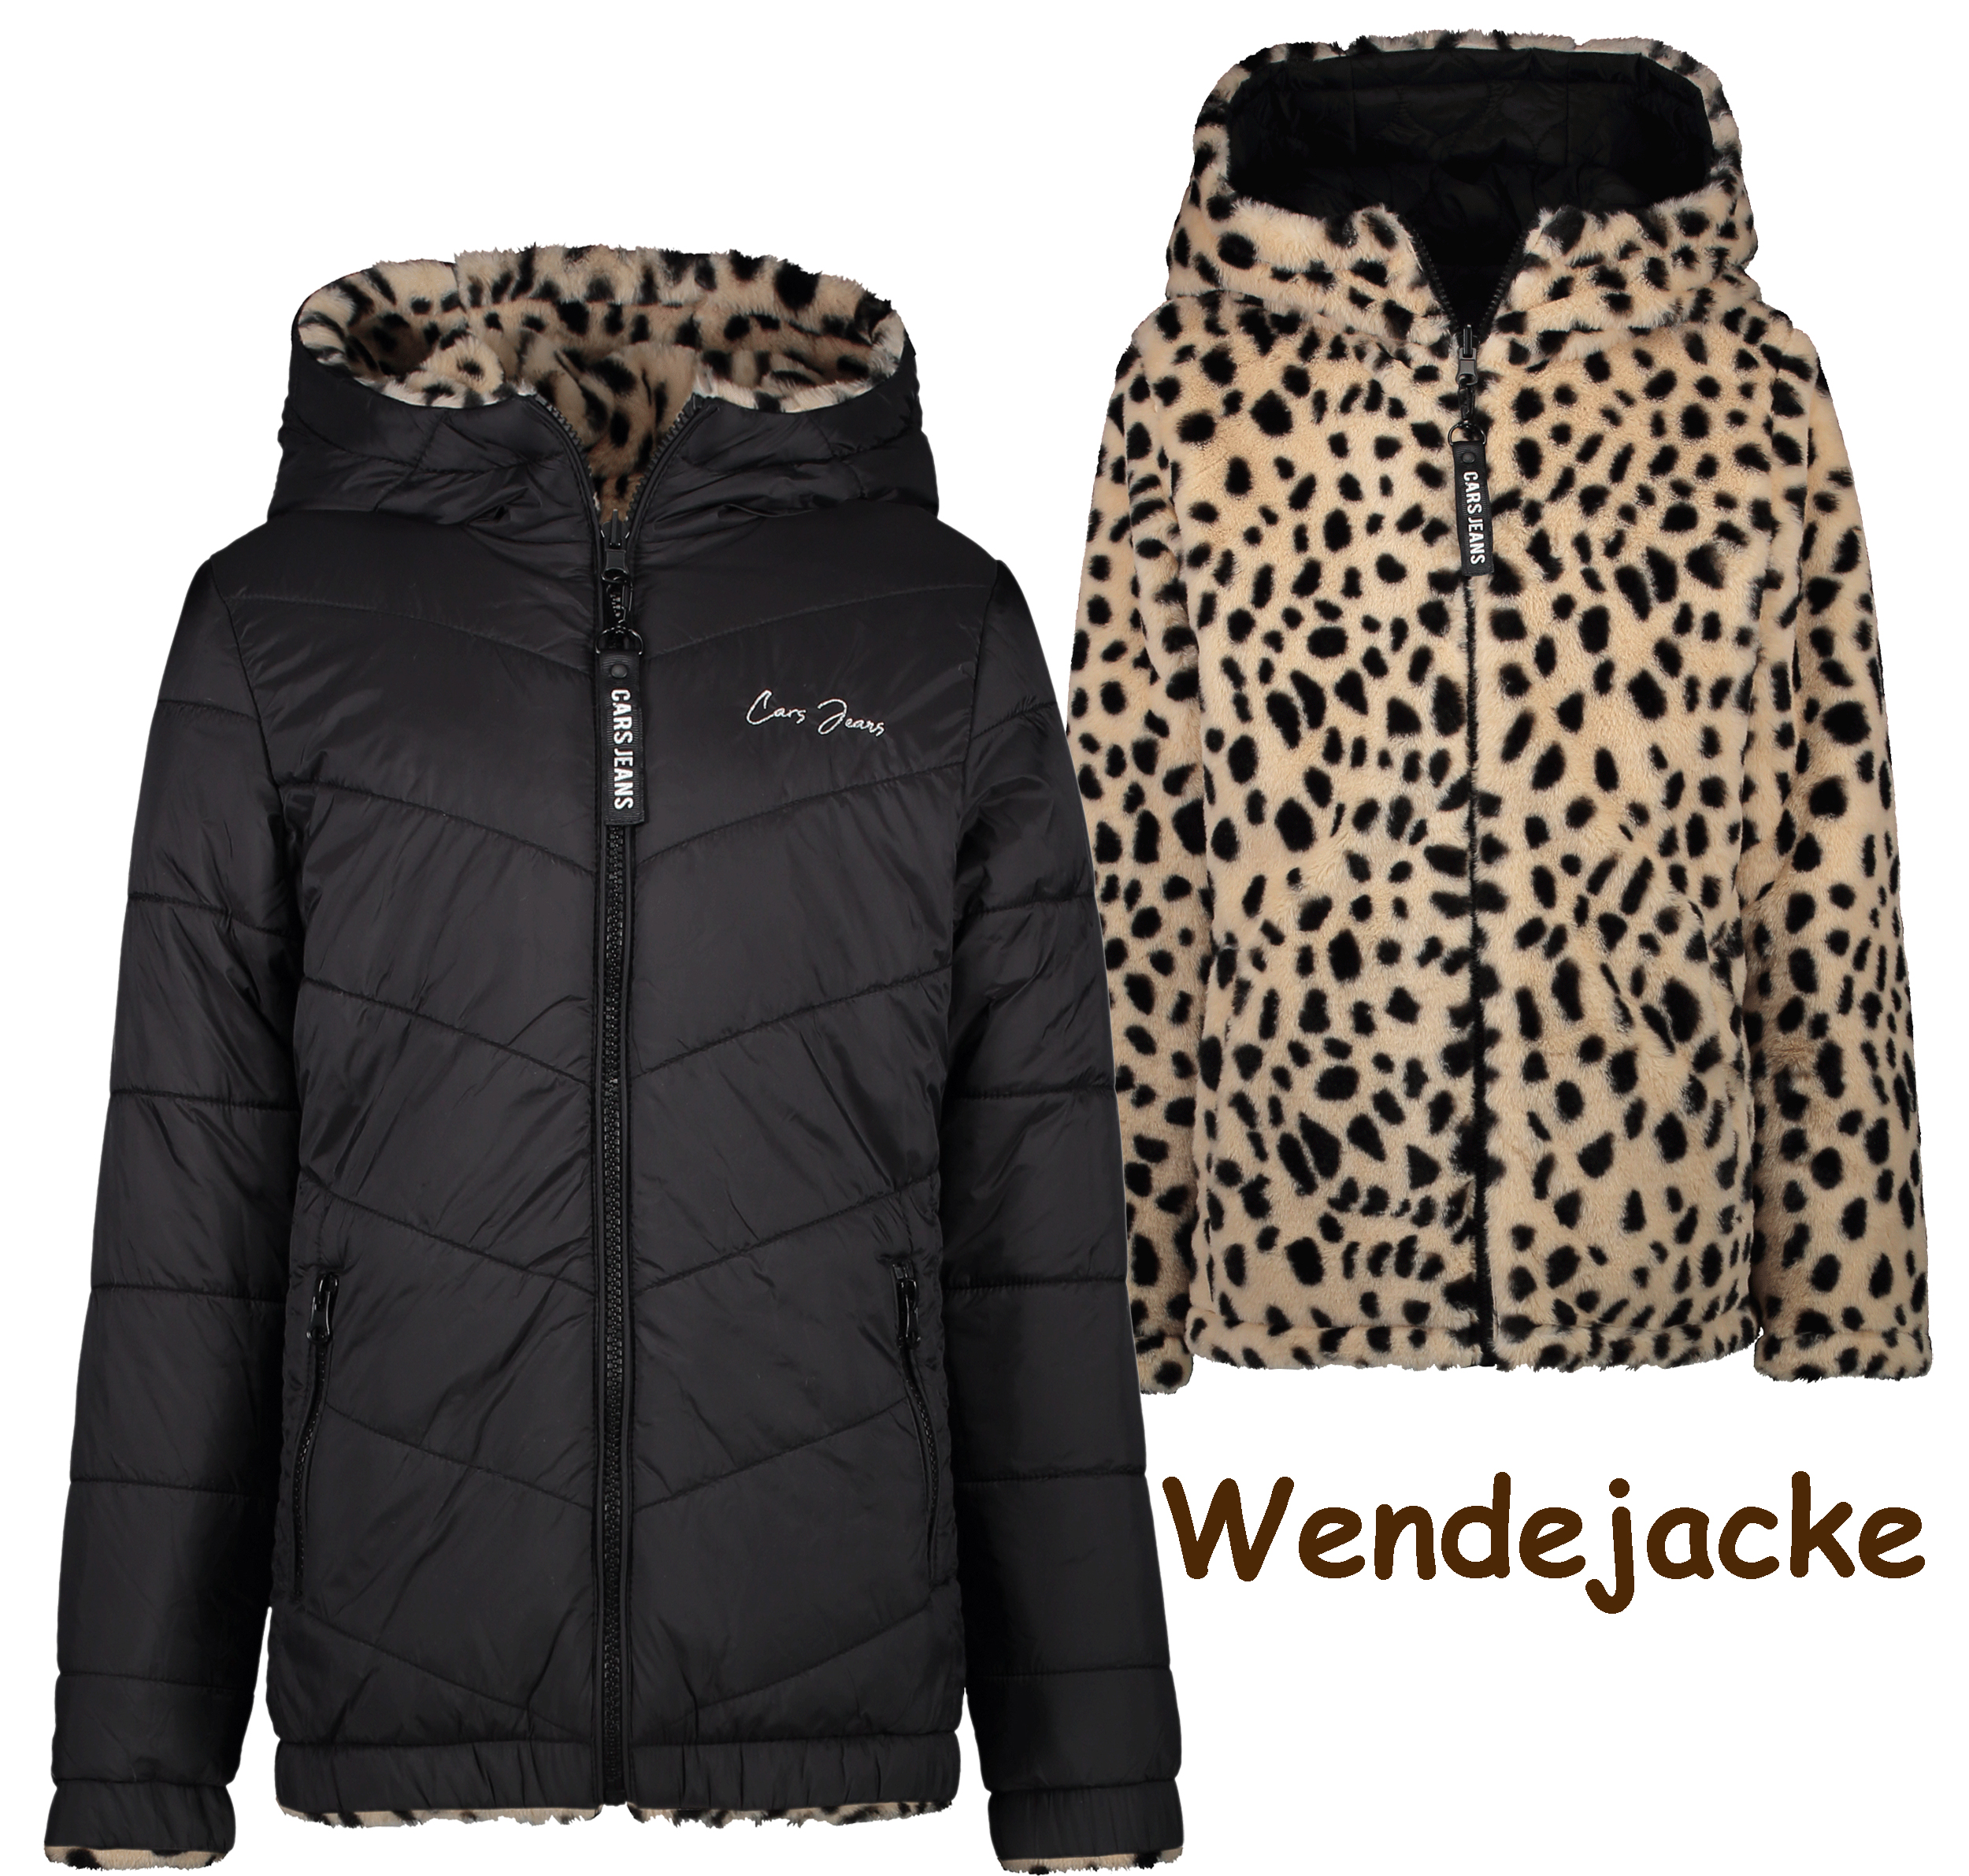 Cars Jeans, Wendejacke, Winterjacke, Leopard, Tierfell